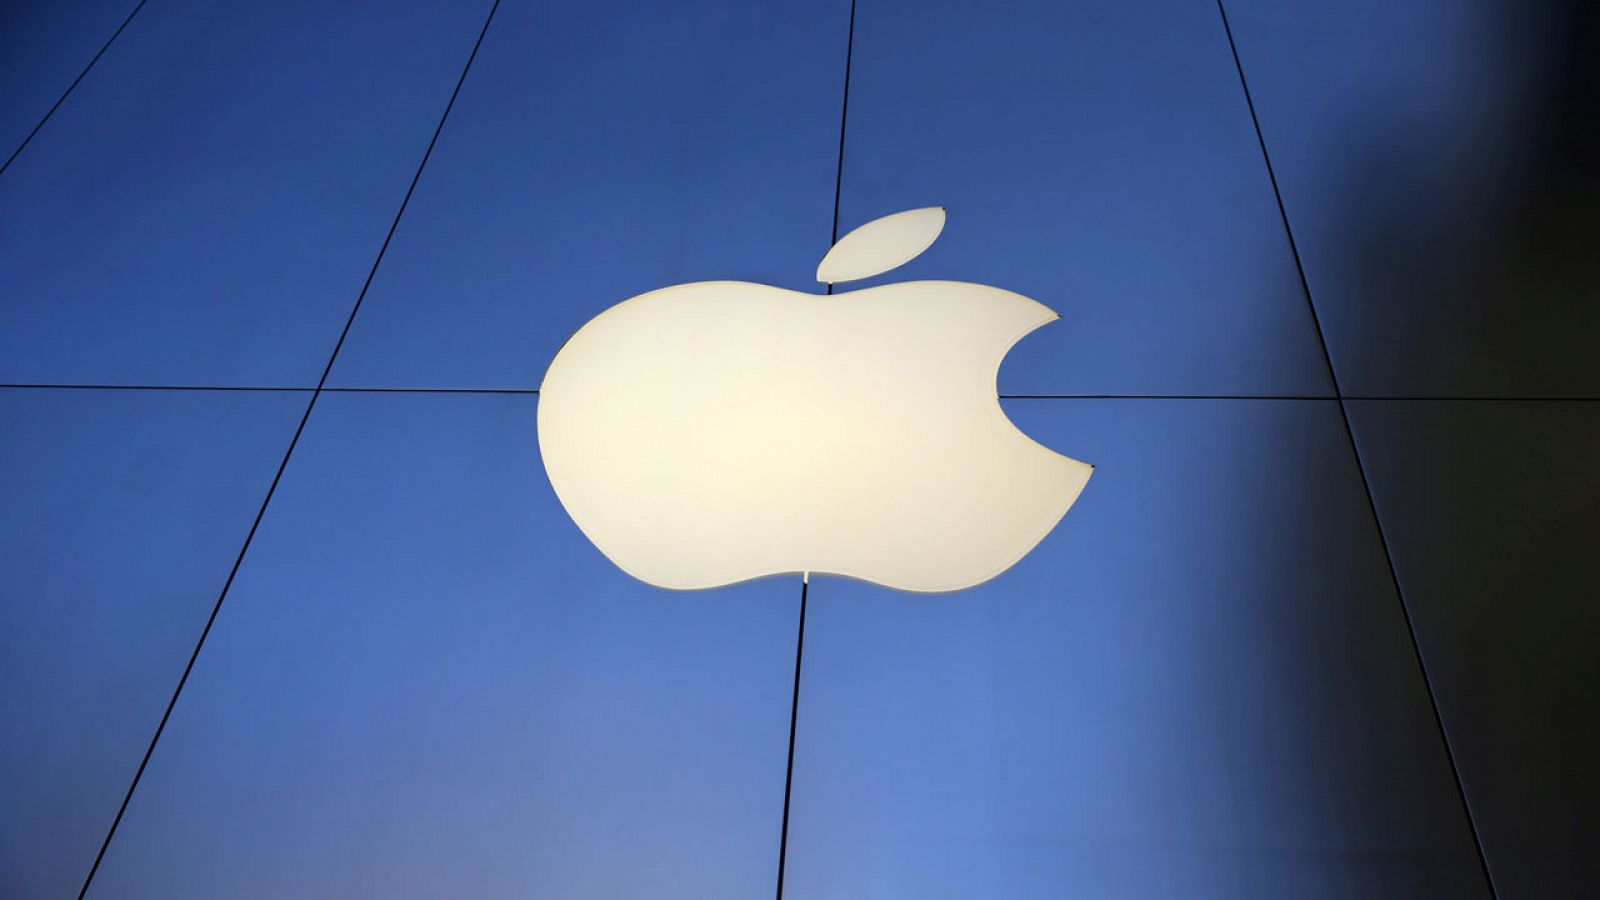 Apple ha sido una de las empresas que han criticado la política migratoria de Trump